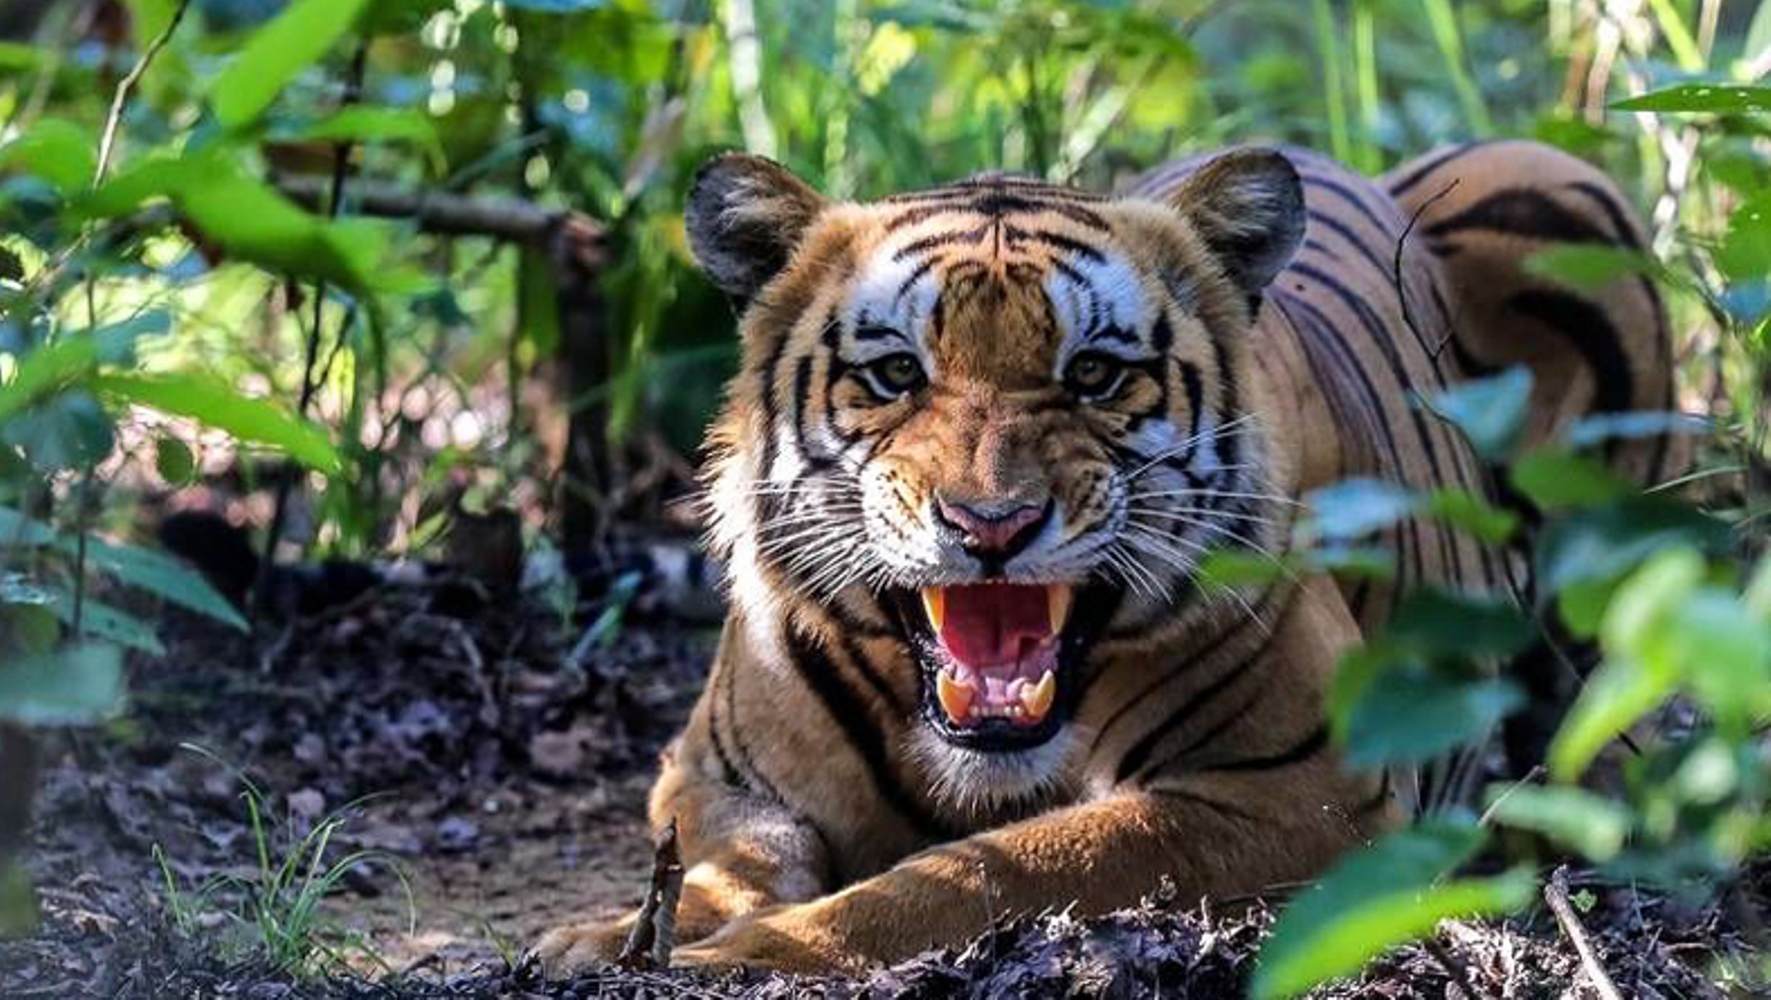 विश्व बाघ दिवसः चुनौतीसँगै संरक्षणका क्षेत्रमा आशलाग्दो उपलब्धि